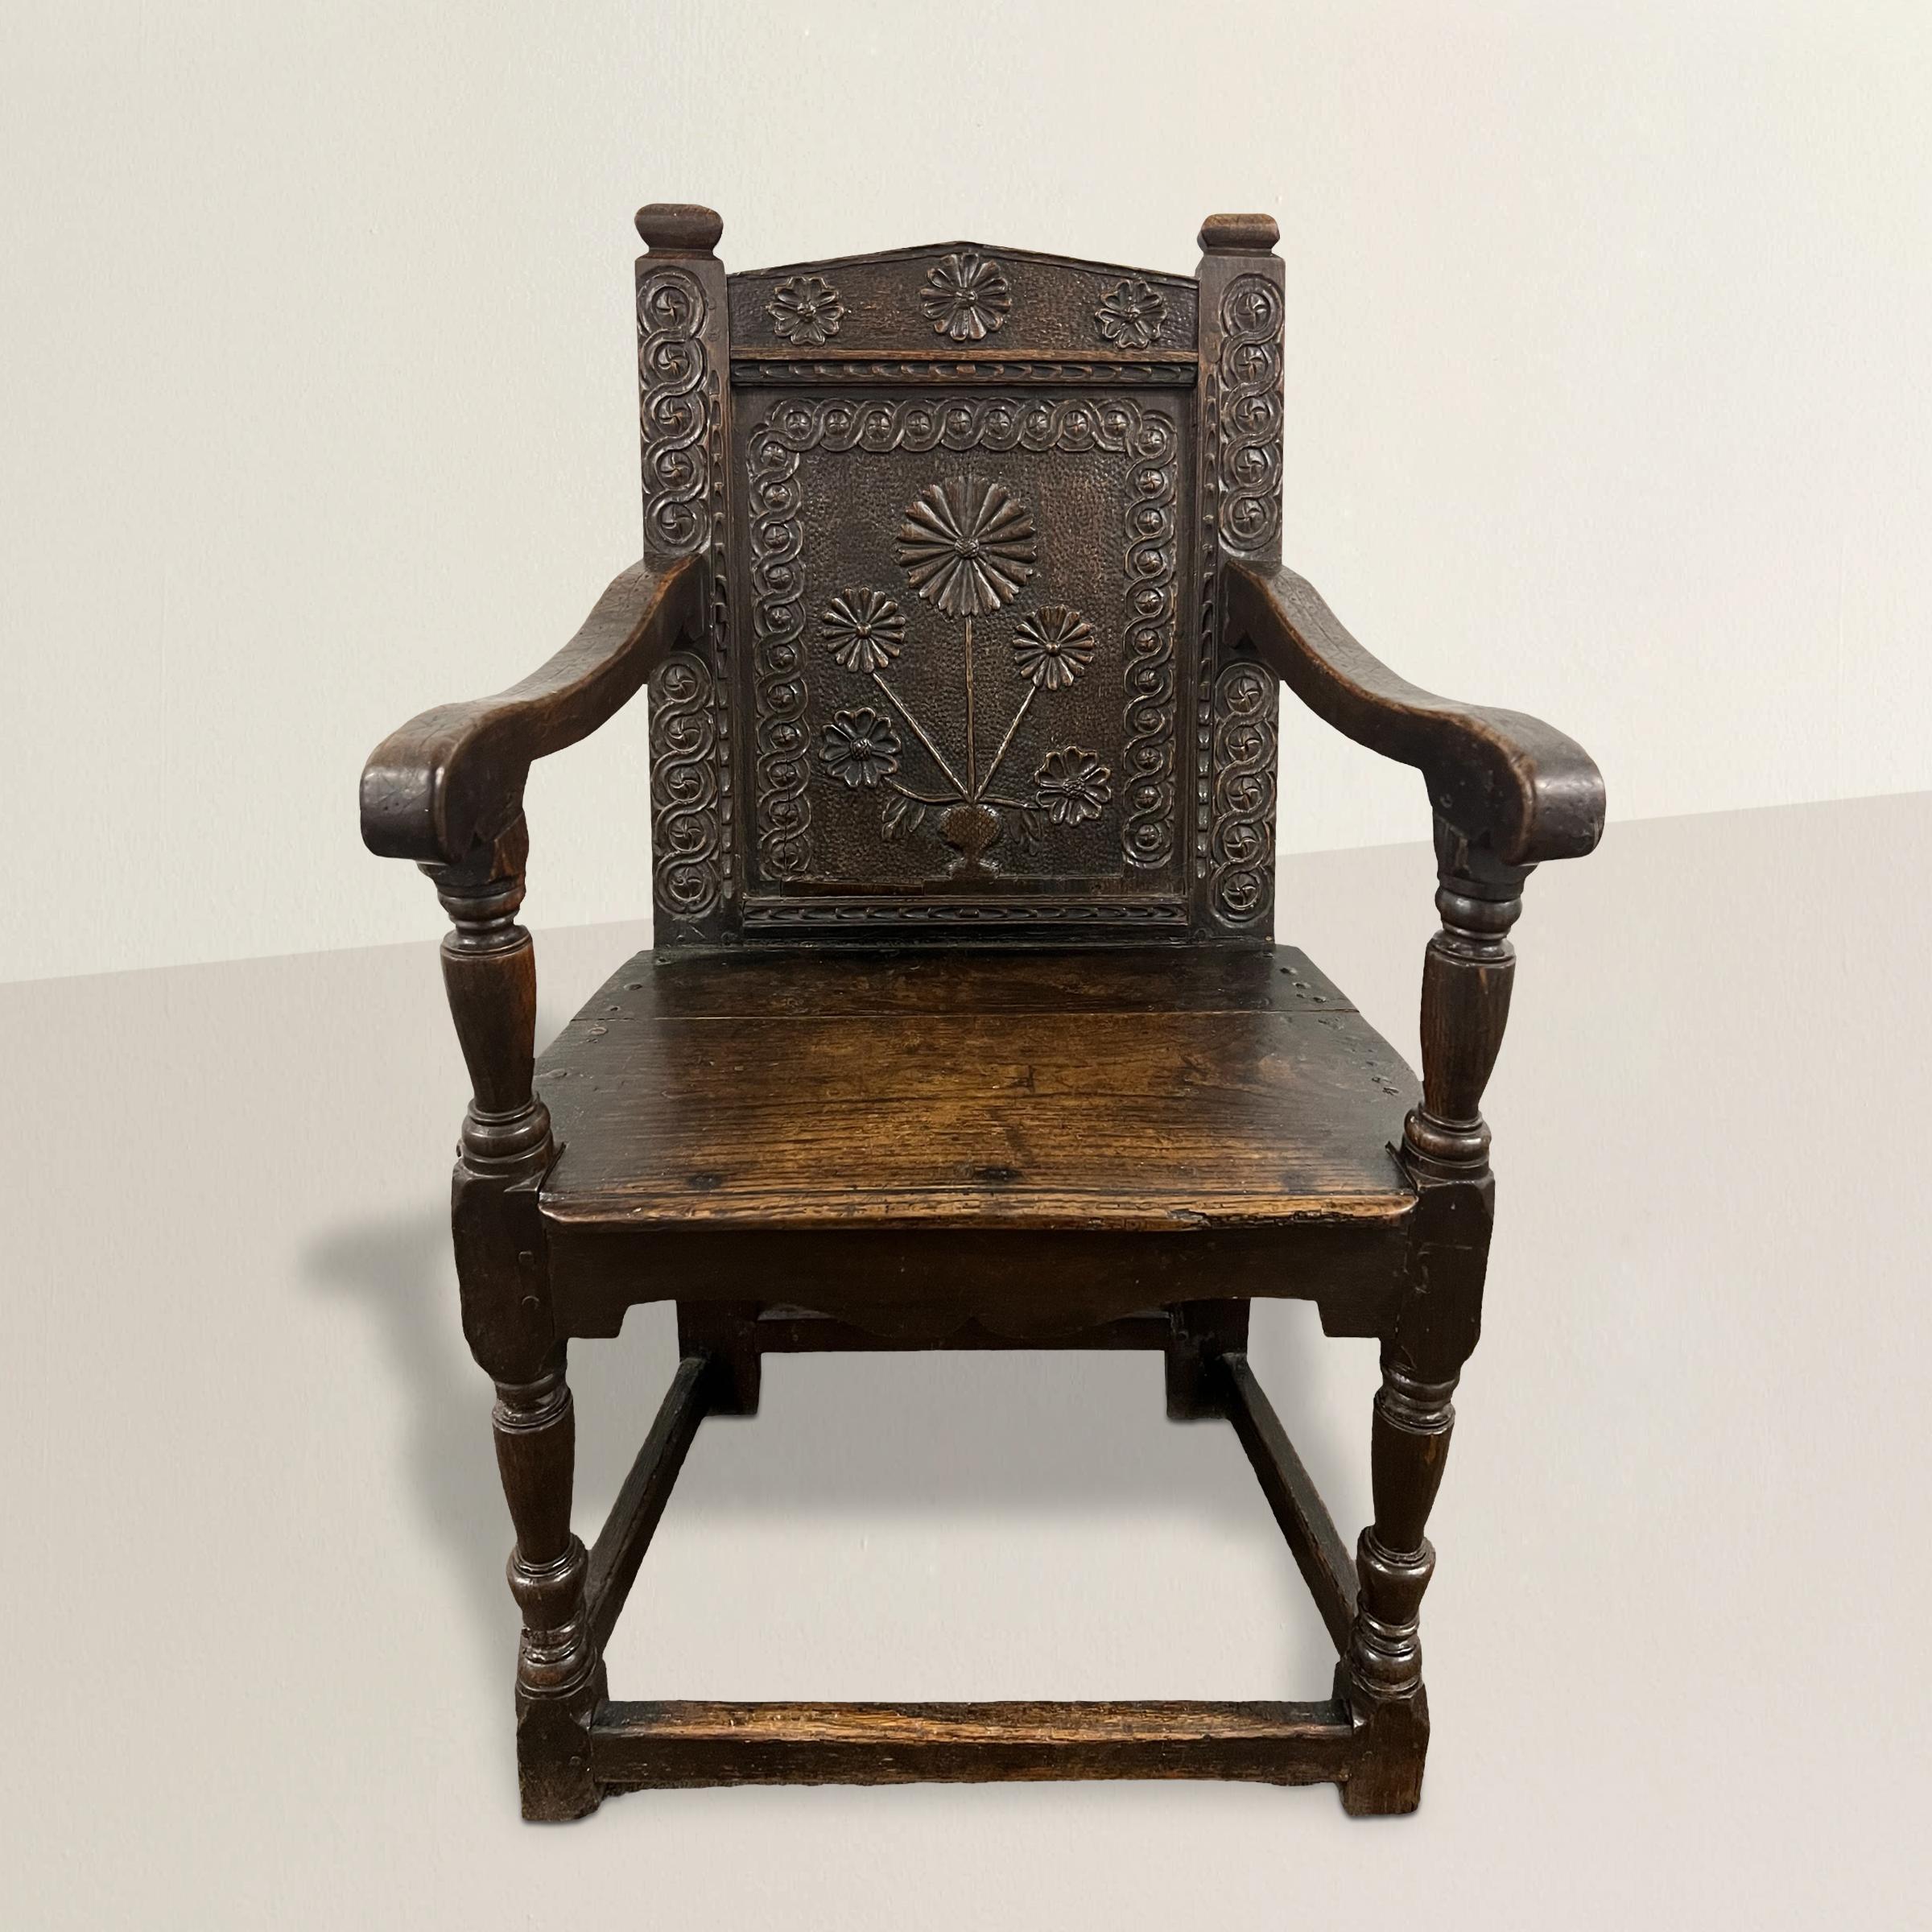 Dieser exquisite Wainscot-Sessel aus englischer Eiche aus dem 17. Jahrhundert ist ein Zeugnis für die meisterhafte Handwerkskunst und den künstlerischen Ausdruck dieser Epoche. Das herausragende Merkmal des Stuhls, eine geschnitzte